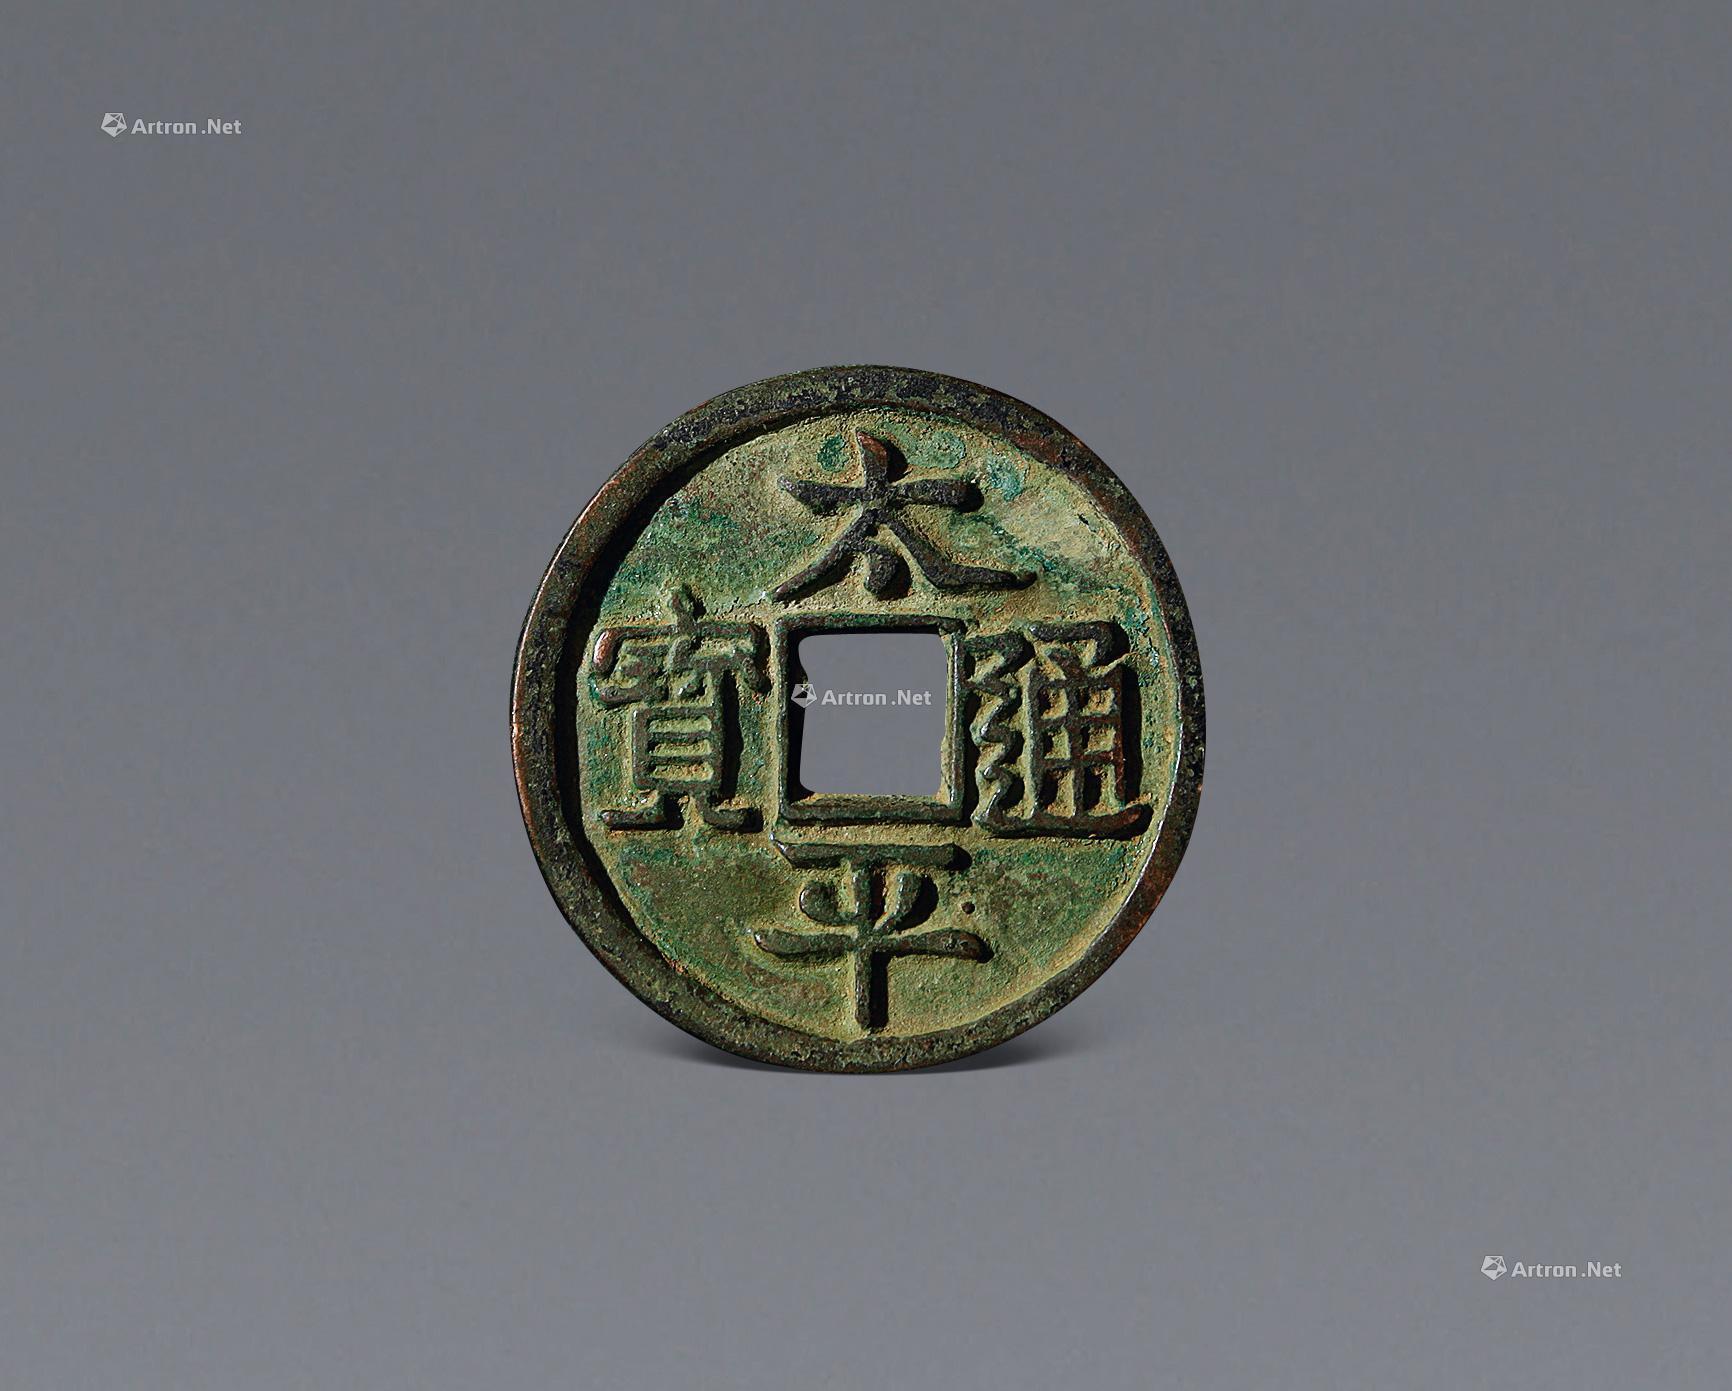 北宋庆历重宝铜钱 - 宋代 - 巨野博物馆